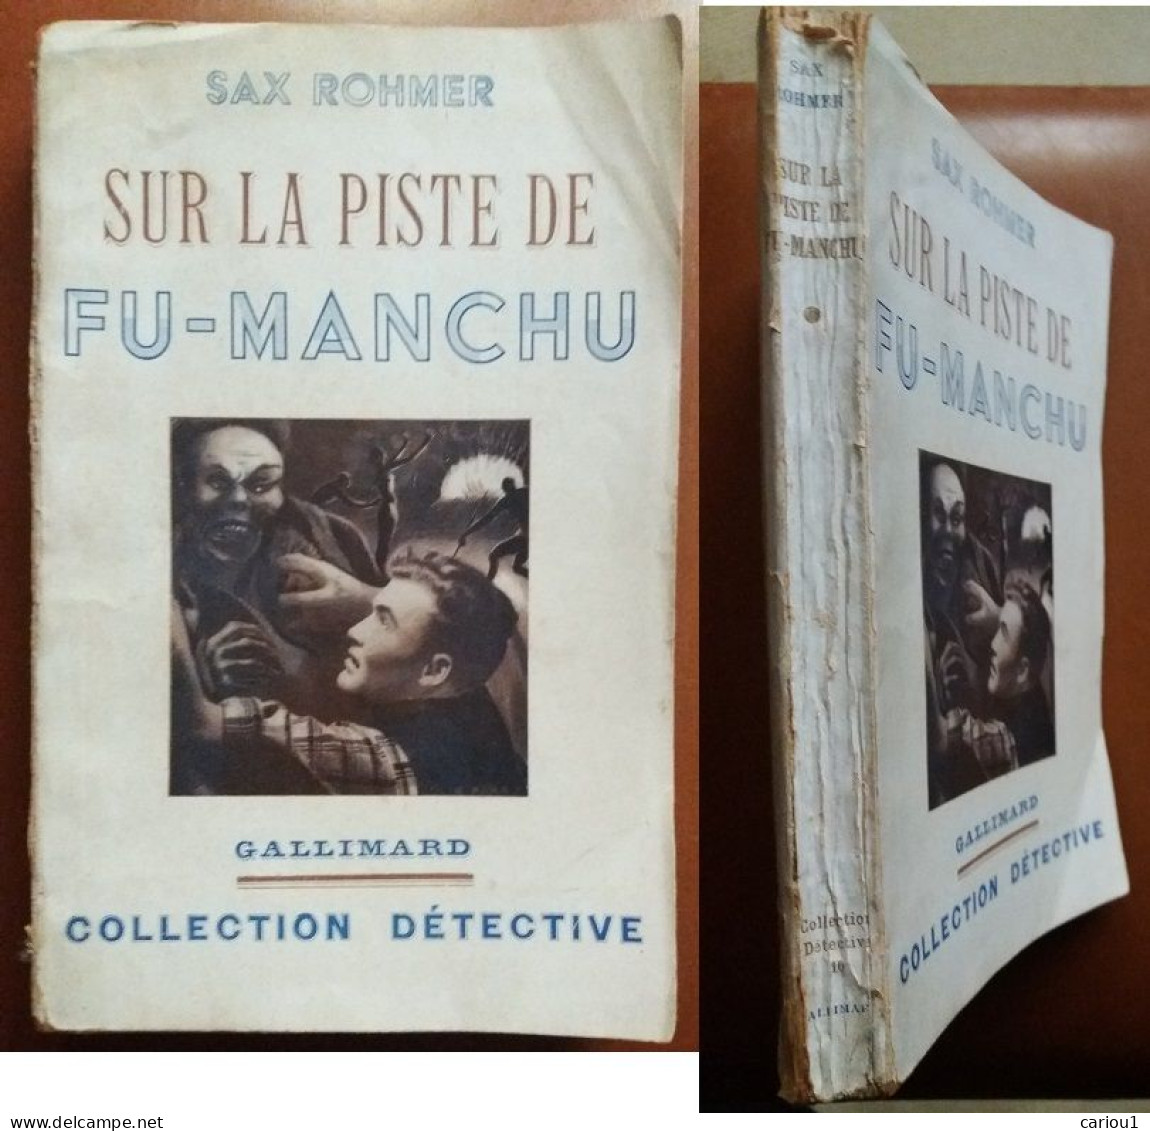 C1 Sax ROHMER - SUR LA PISTE DE FU MANCHU EO 1938 The Trail Of Fu Manchu SF PORT INCLUS France - Antes De 1950